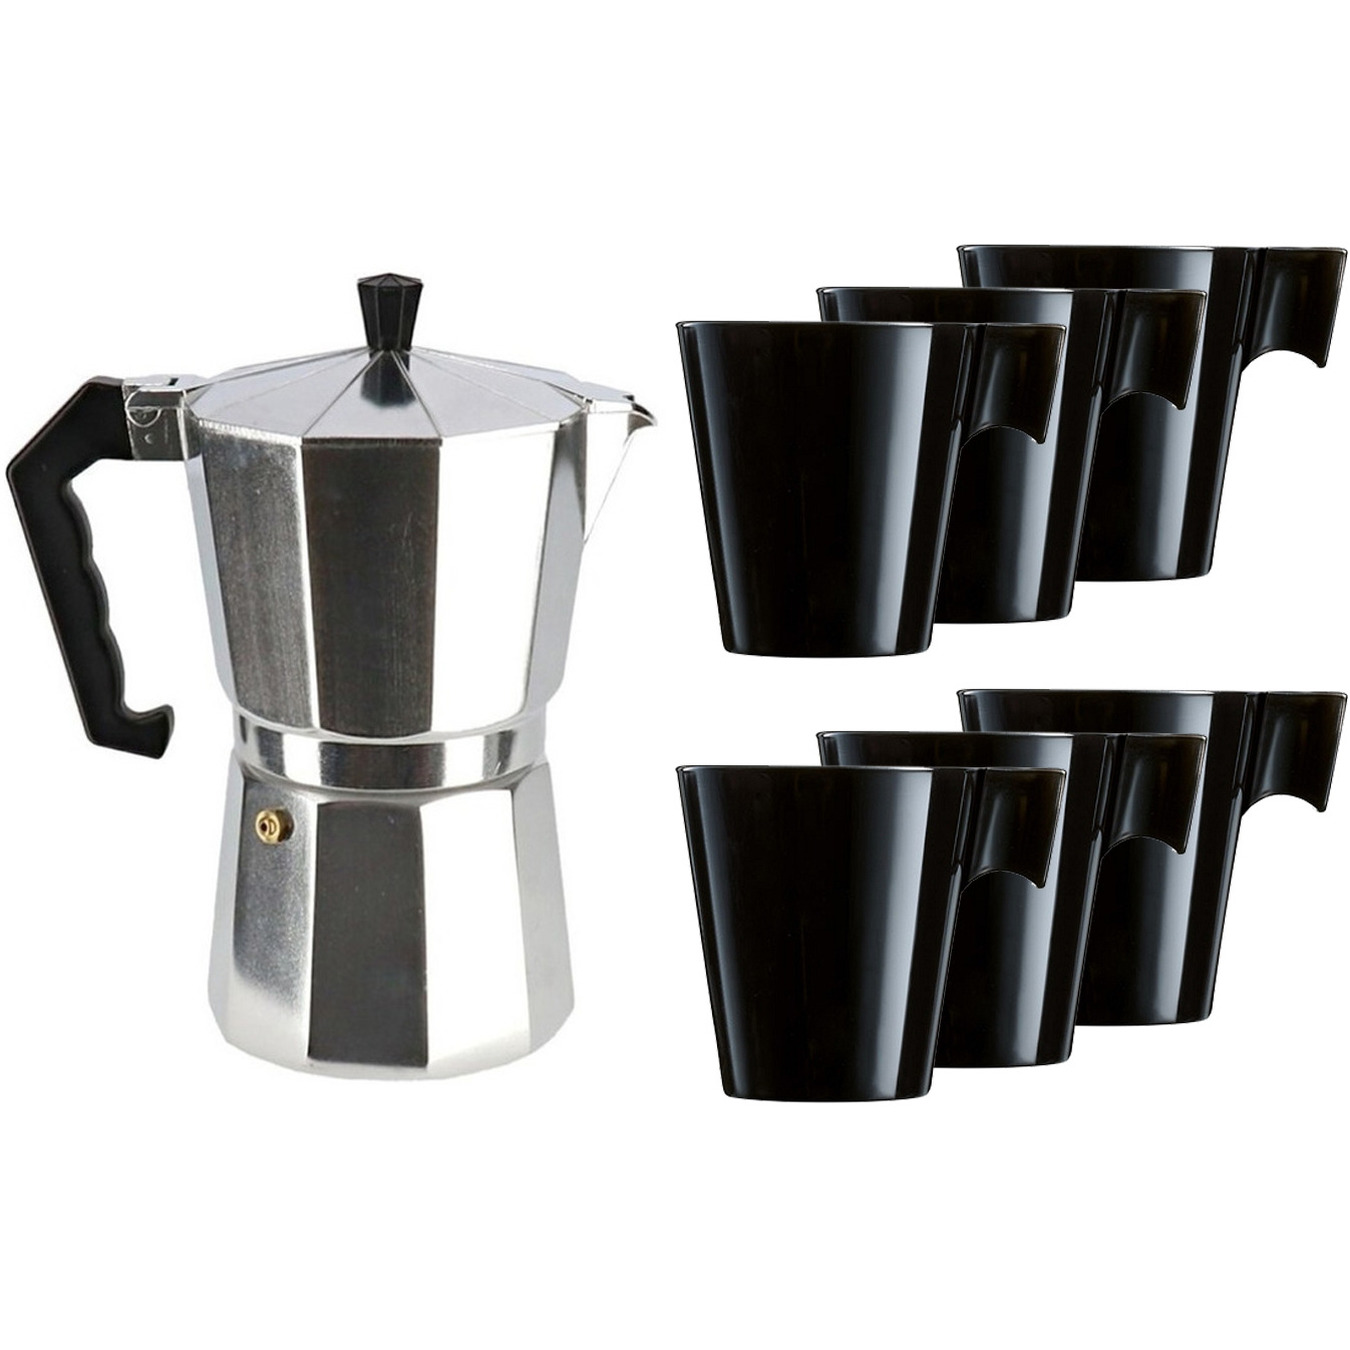 Percolator-espresso apparaat zilver met 6x zwarte kopjes-mokken